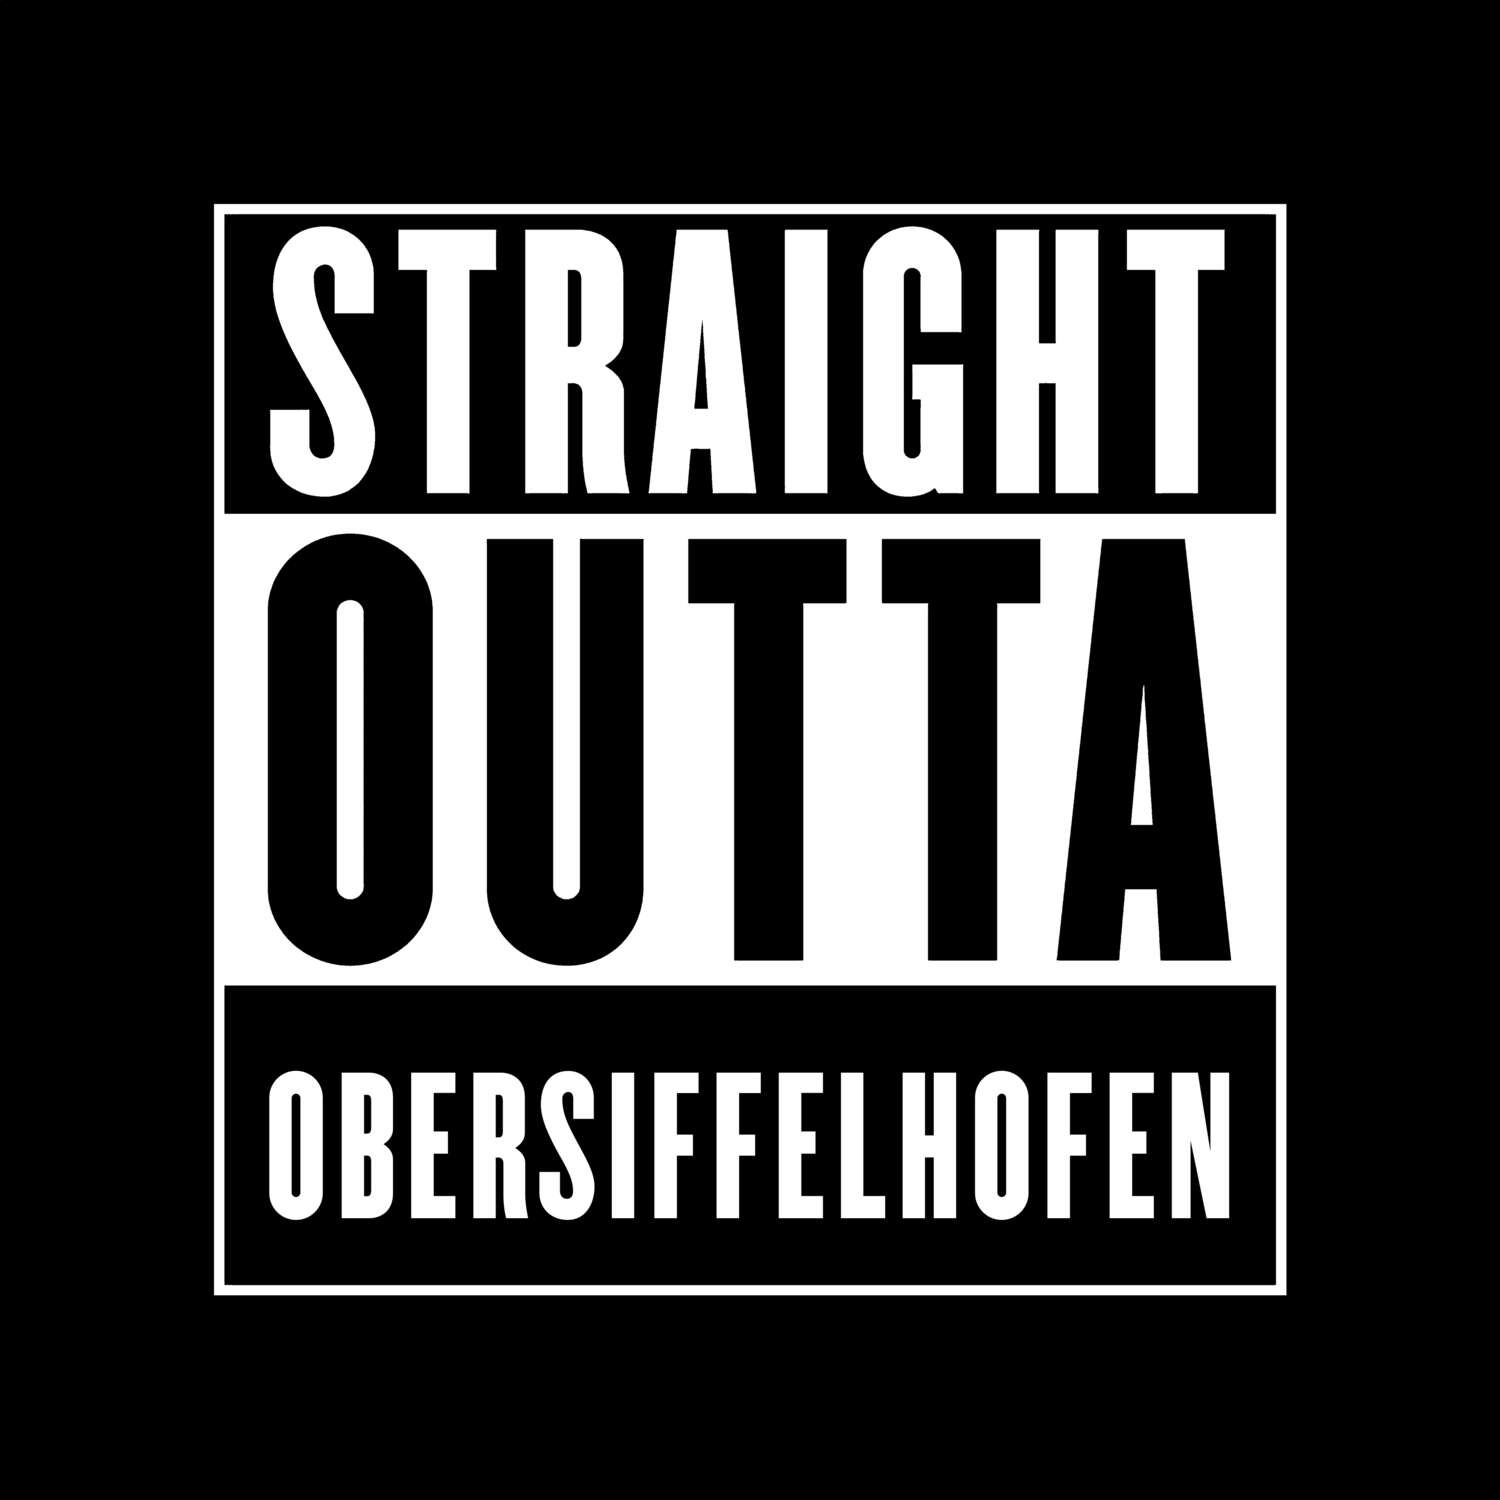 Obersiffelhofen T-Shirt »Straight Outta«